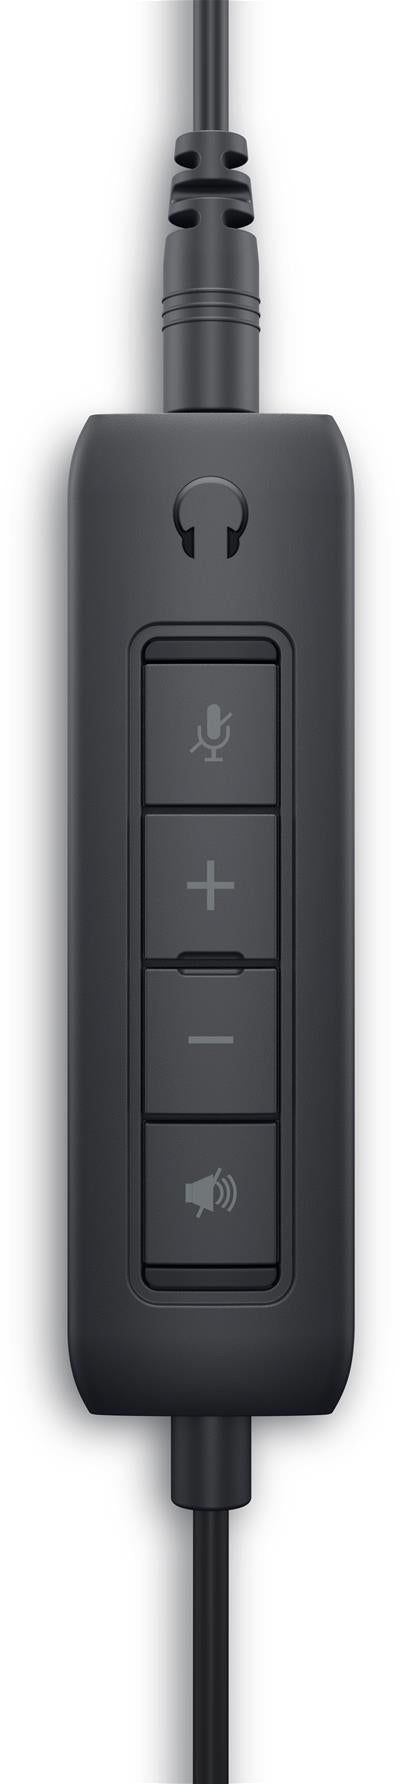 Dell Pro WH1022 - Auriculares Con Cable Stereo Con Micrófono Todos los auriculares | DELL